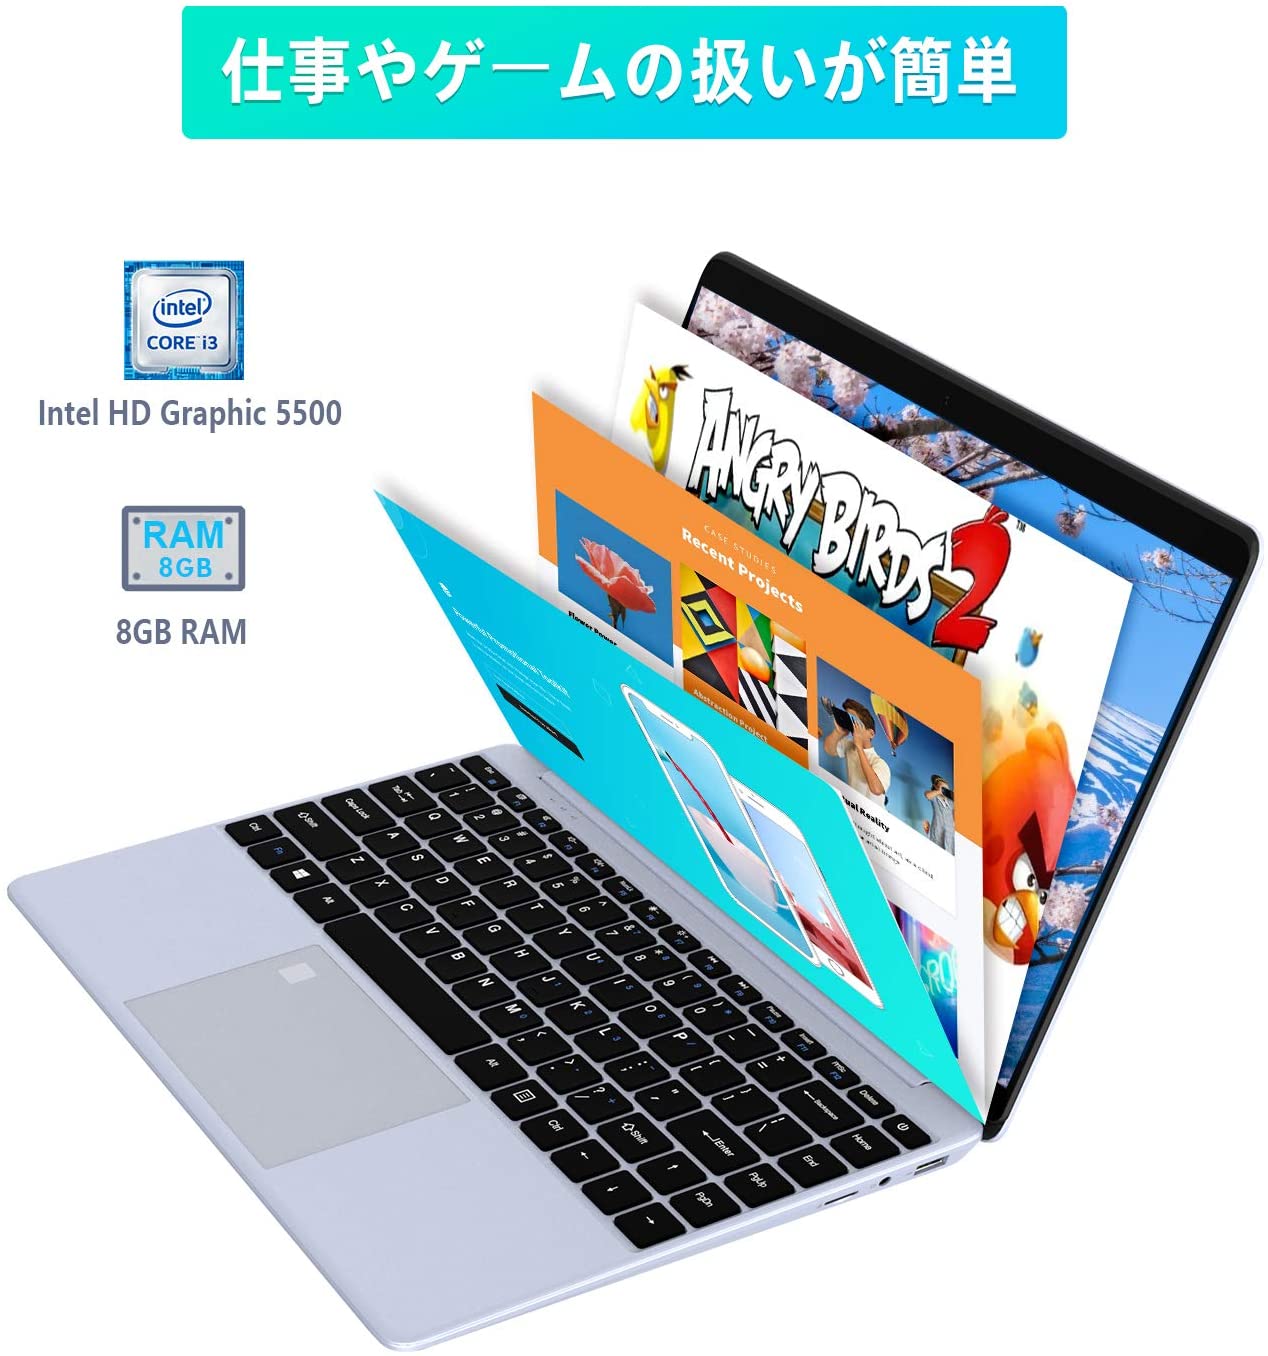 PC/タブレット タブレット VASTKING K149U】新品4万円でSSD,指紋認証がある人気おすすめノート 